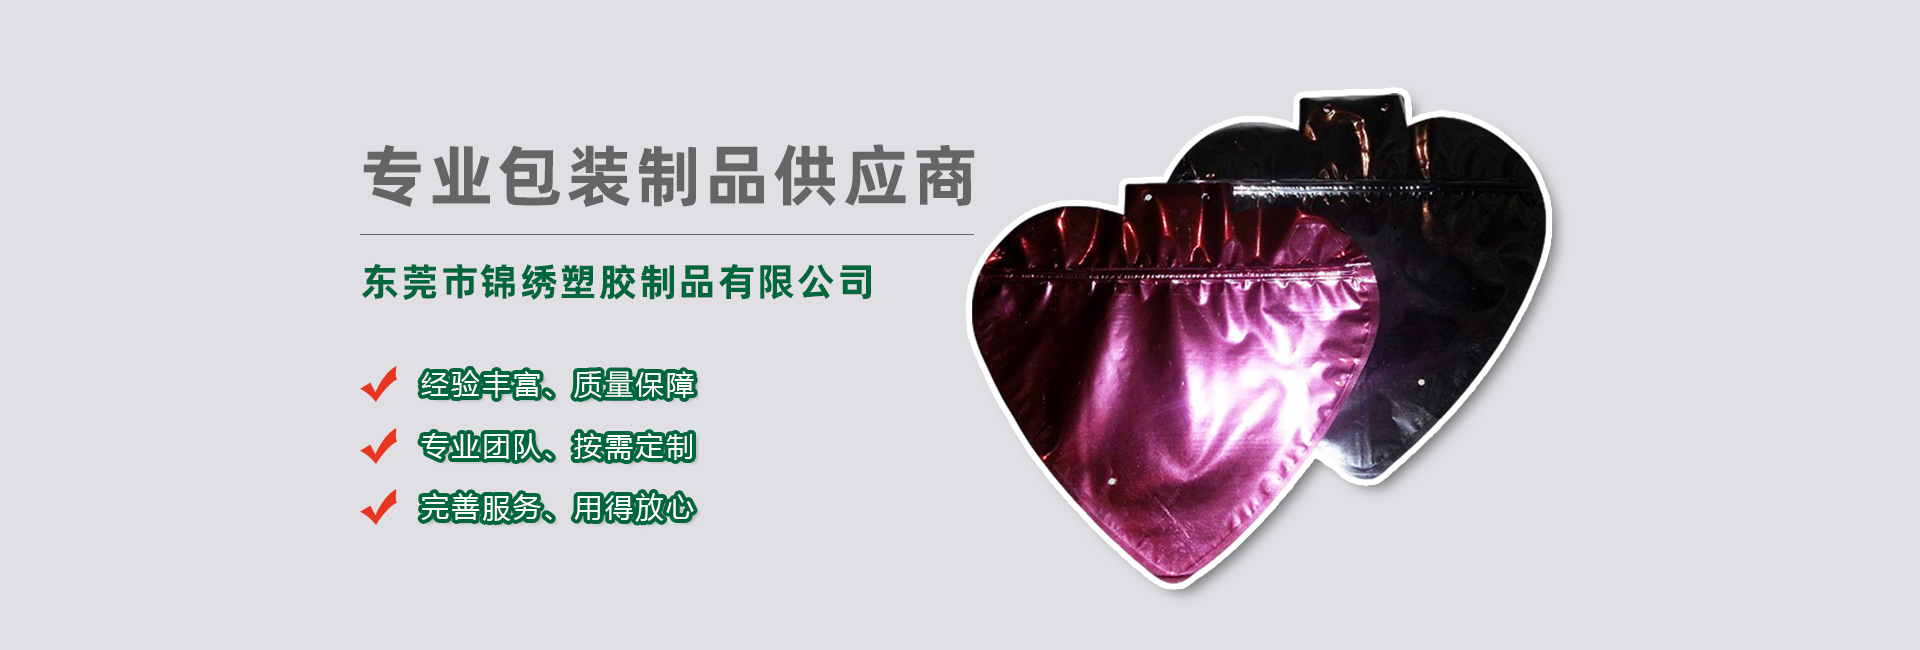 梅州食品袋banner